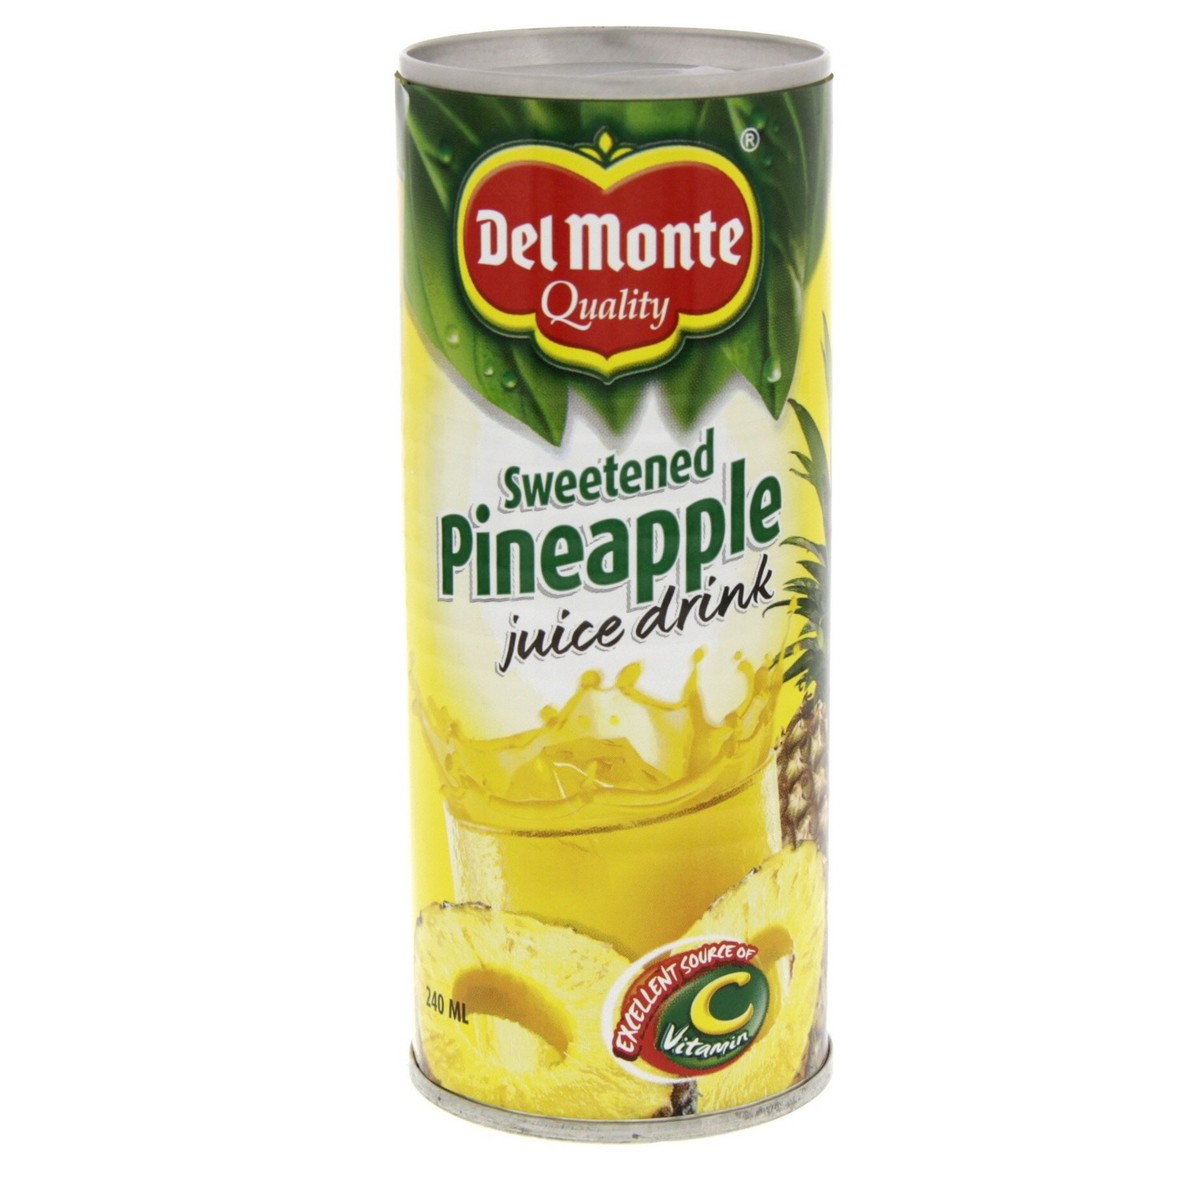 Delmonte Sweetened Pineapple Juice Drink 240ml Canned Fruit Drink